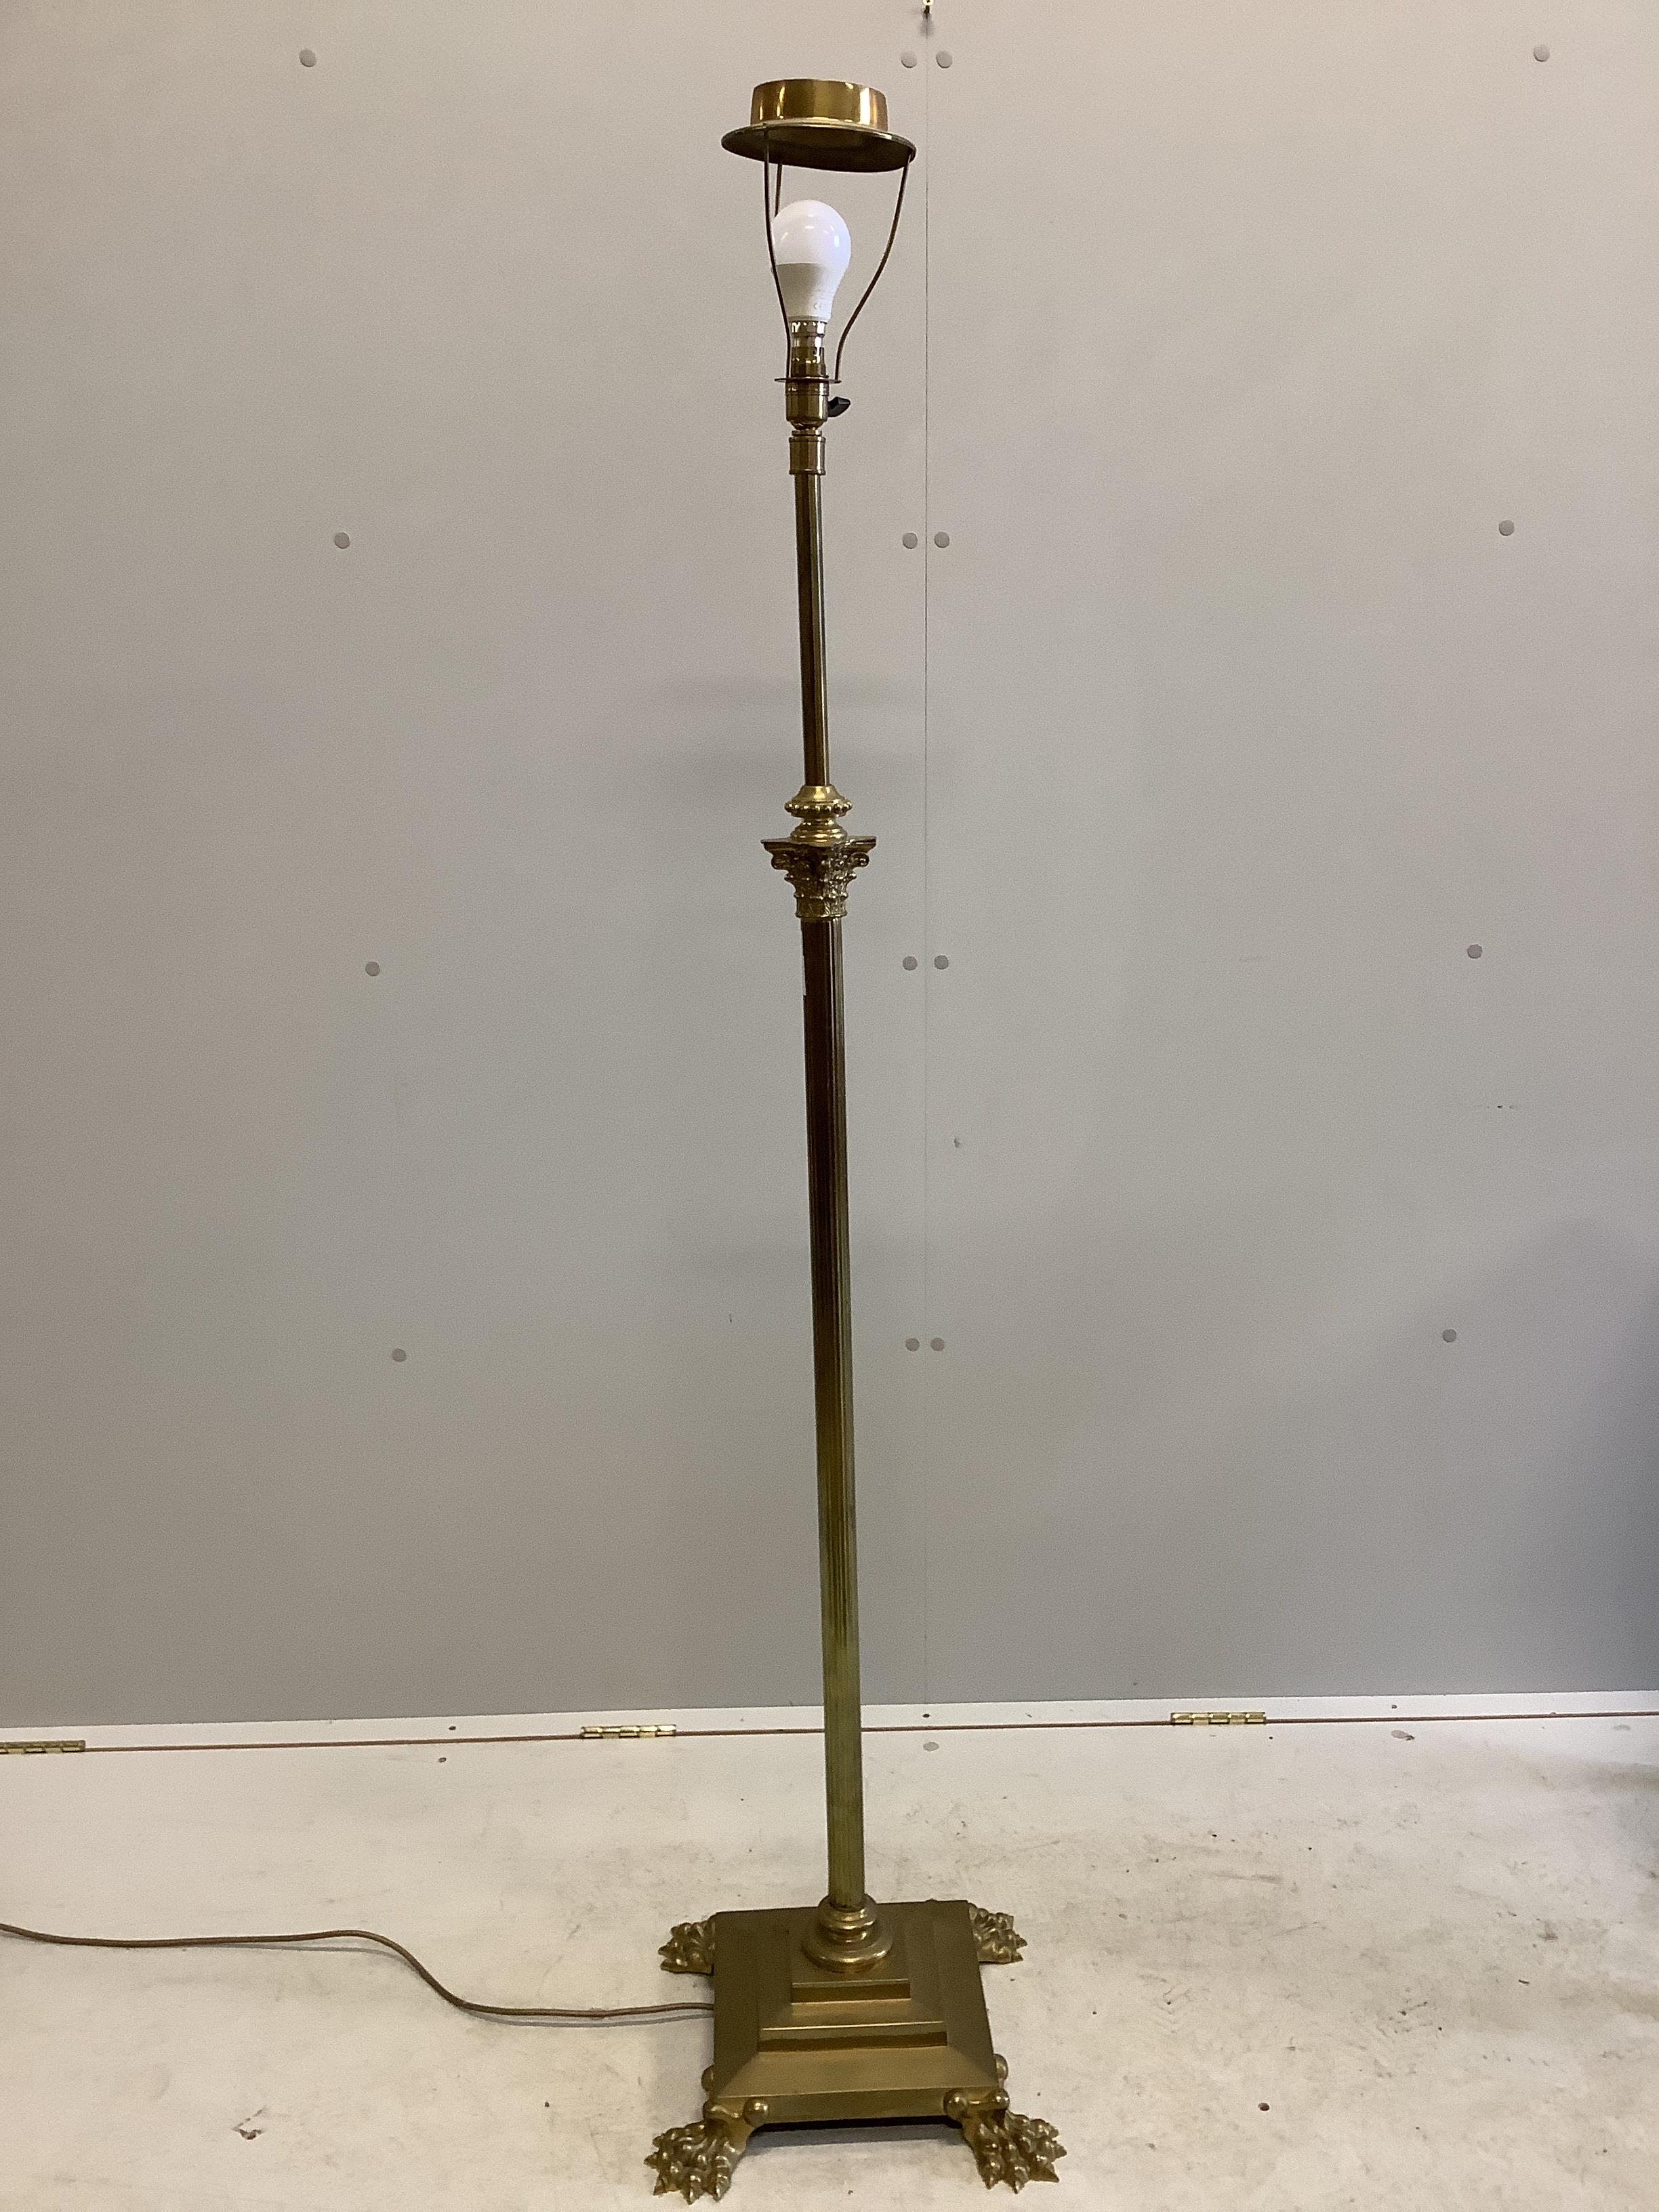 A Corinthian column brass telescopic lamp standard